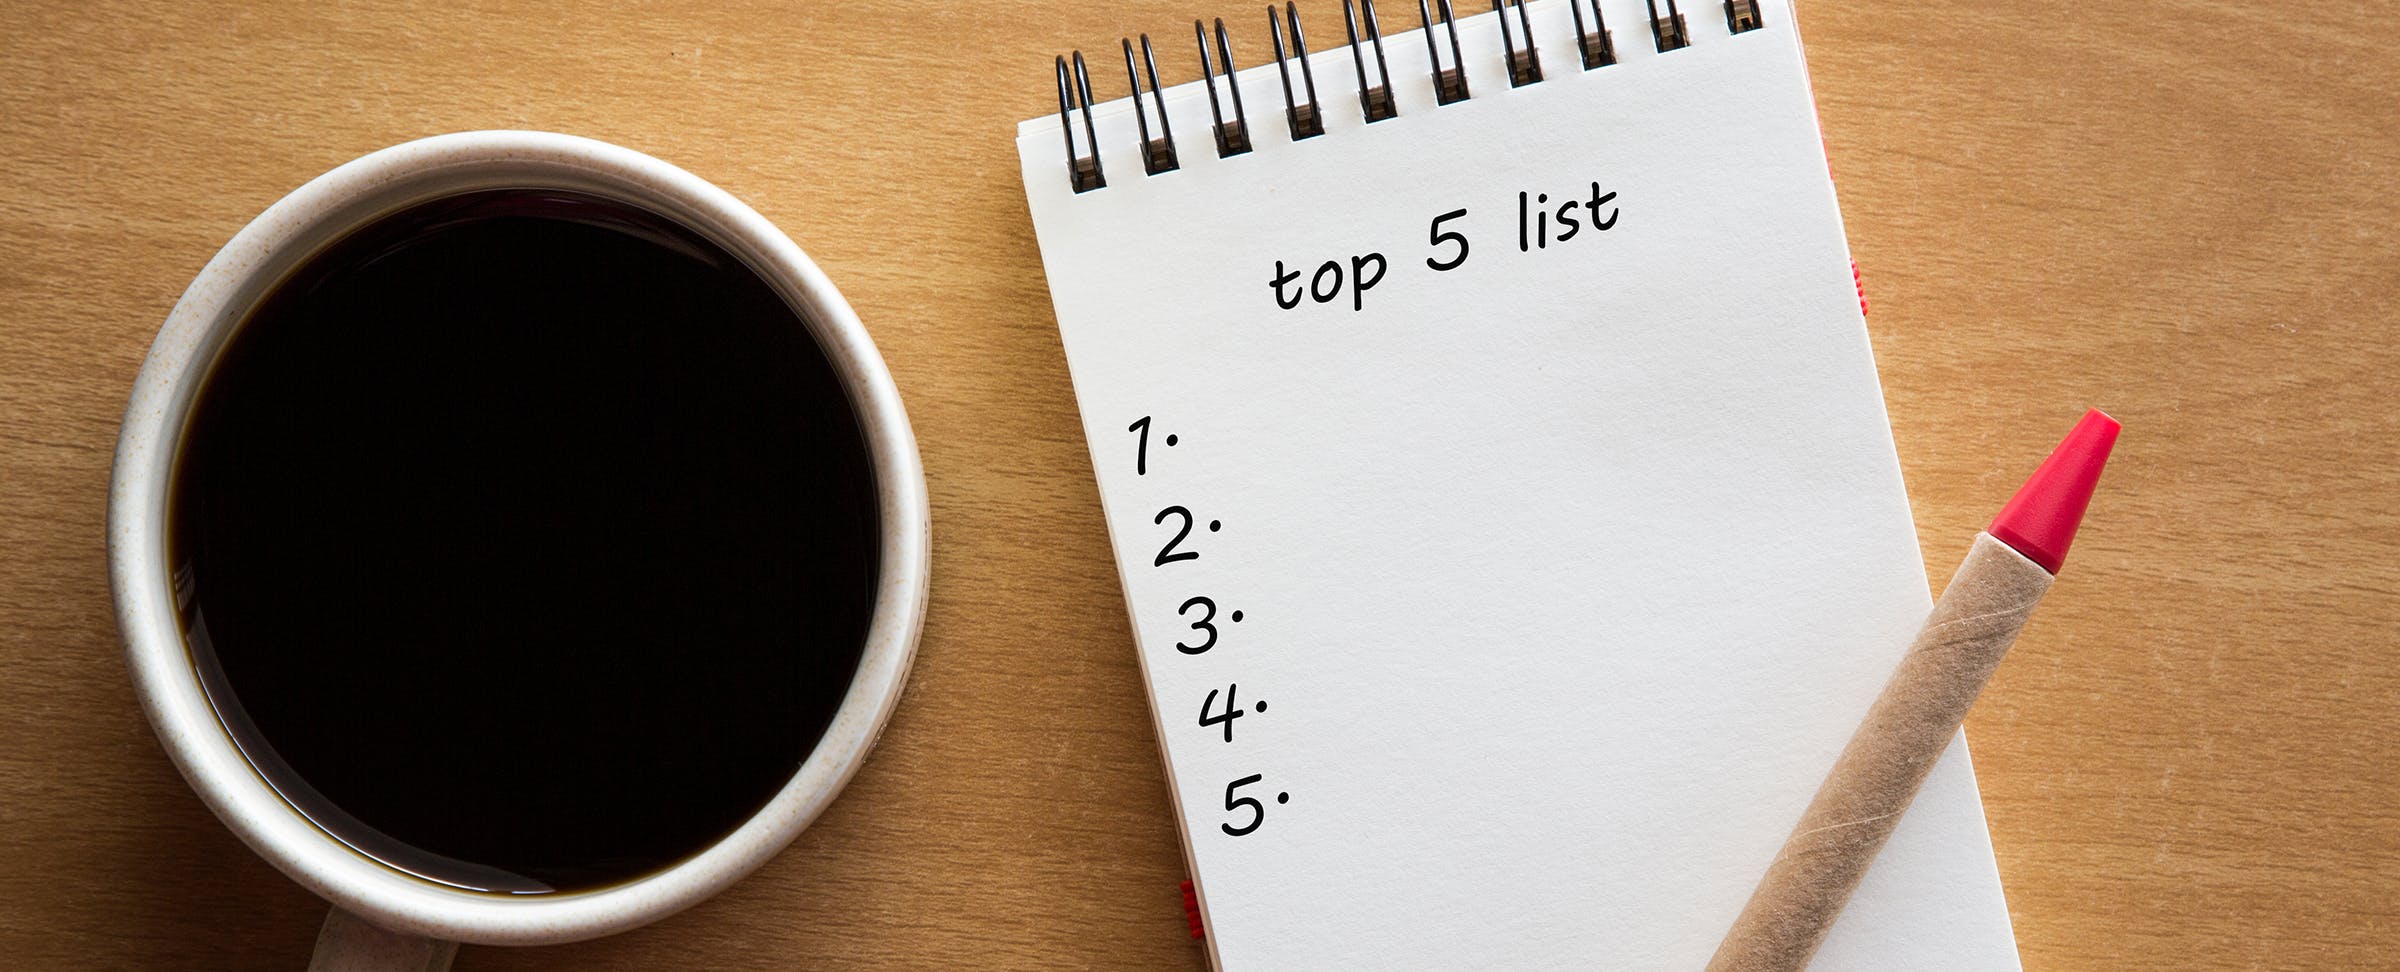 Top 5: Khởi động lại bài kiểm tra vấn đáp đứng đầu danh sách được đọc nhiều nhất trong tháng 2023 năm XNUMX - Tin tức EdSurge